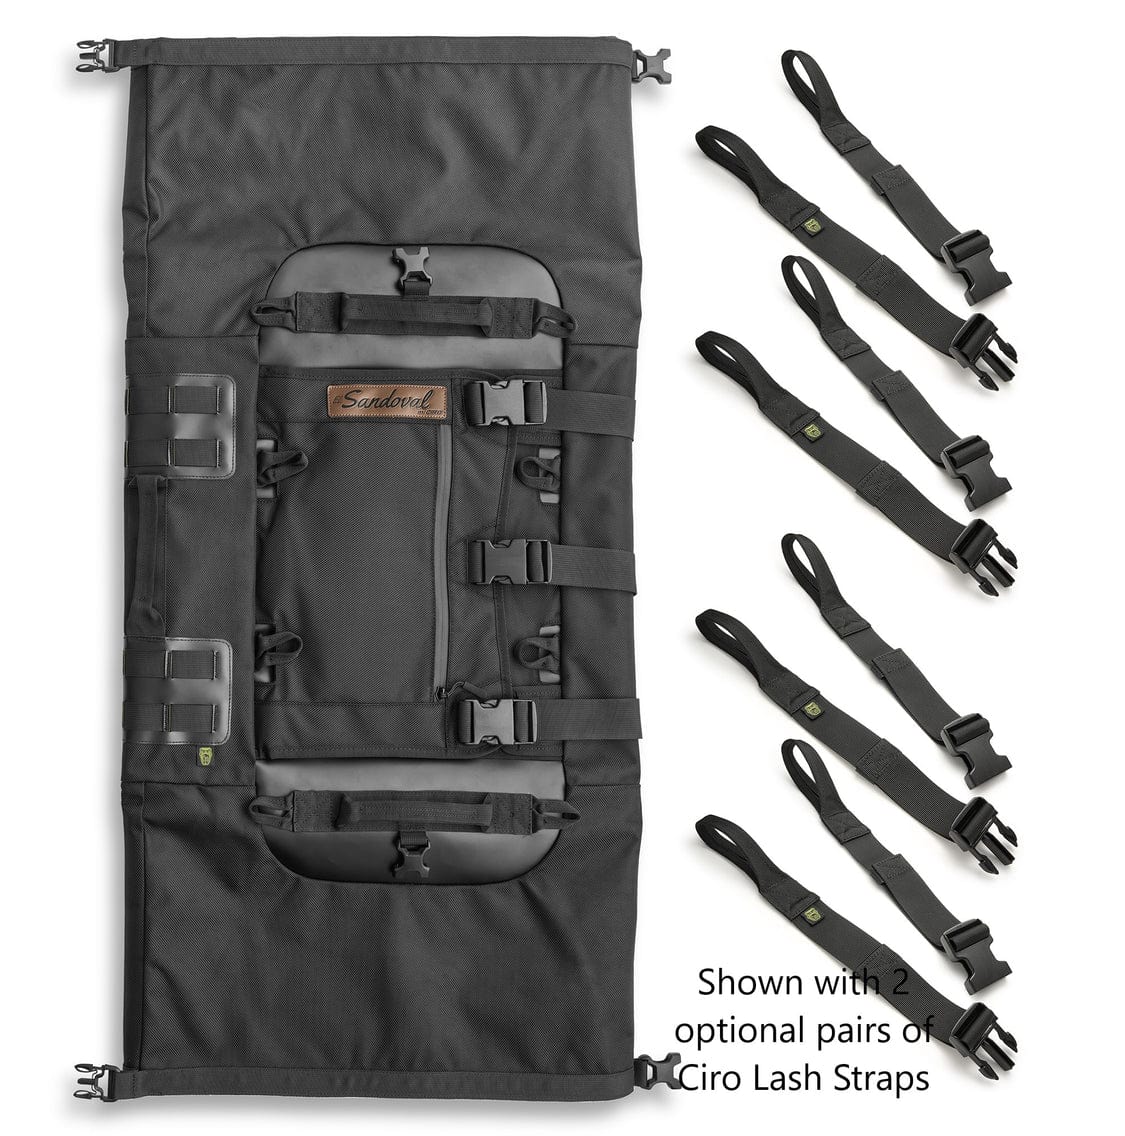 Ciro3D Luggage Include Two Las Strap Kits El Sandoval Bag by Ciro